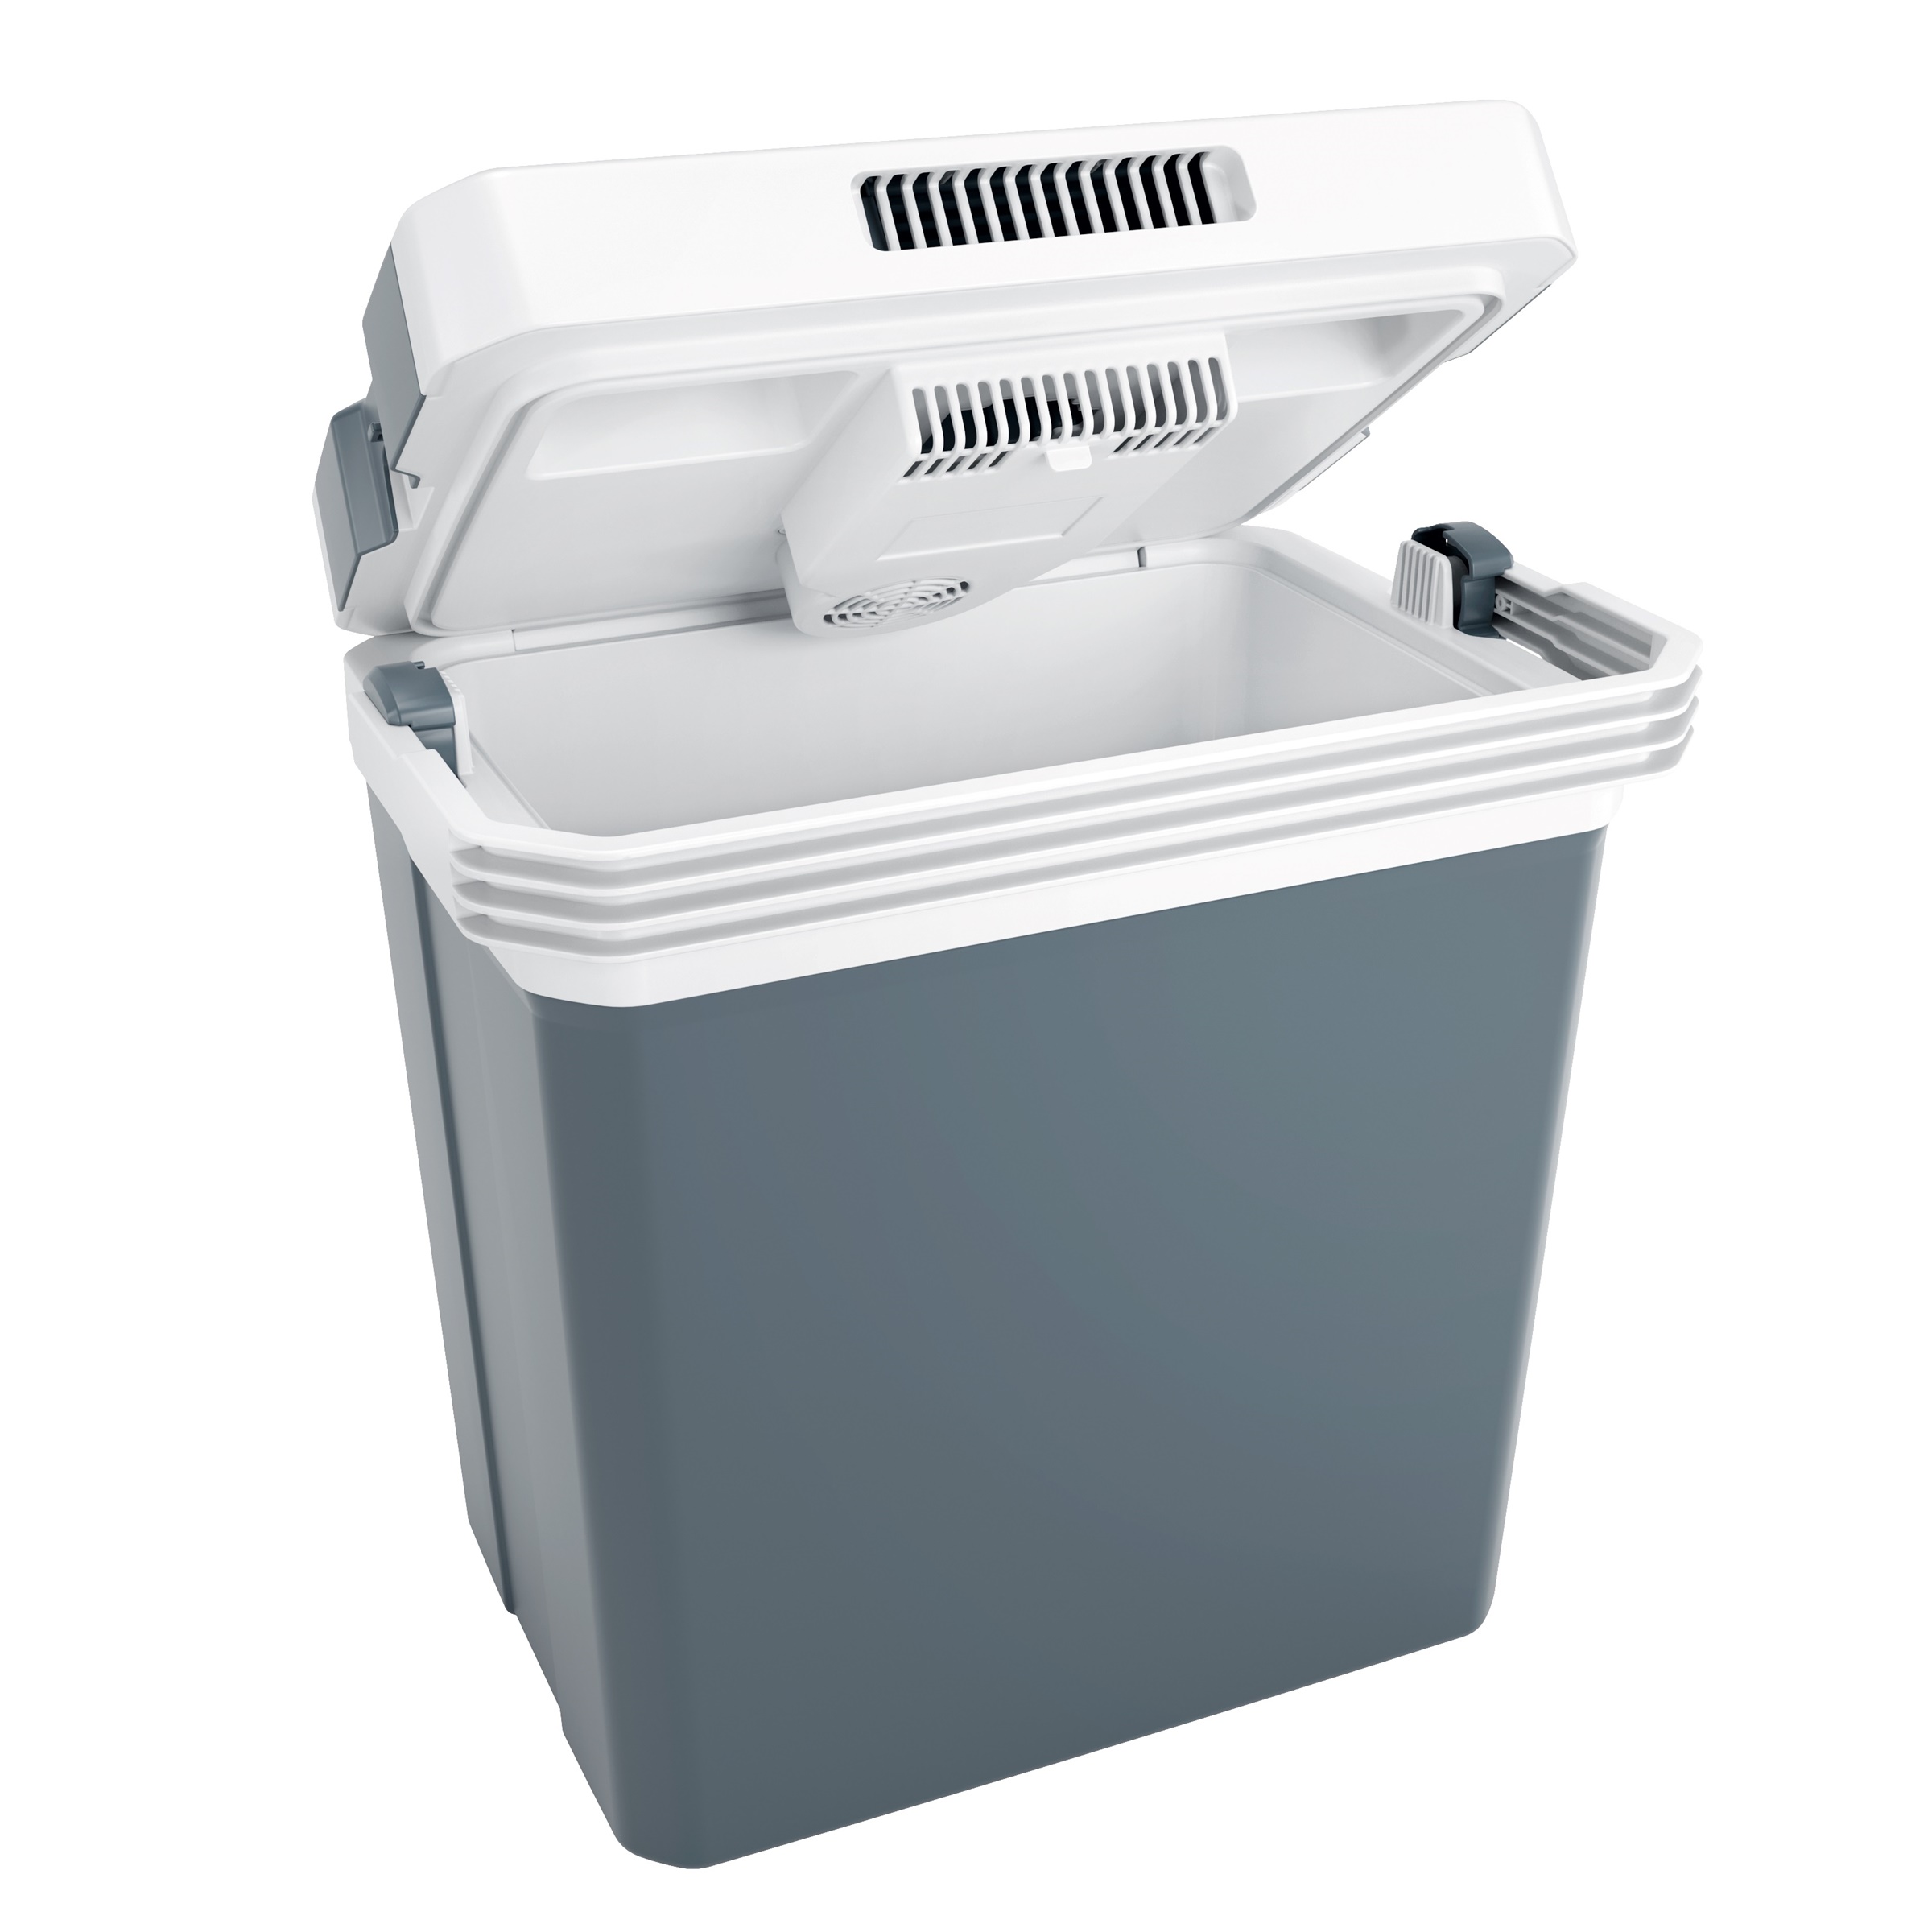 Kühlbox / Warmhaltebehälter, 30 Liter, 12 Volt - Kühlbox mit Heiz-/ Warmahaltefunktion (Heizbox)